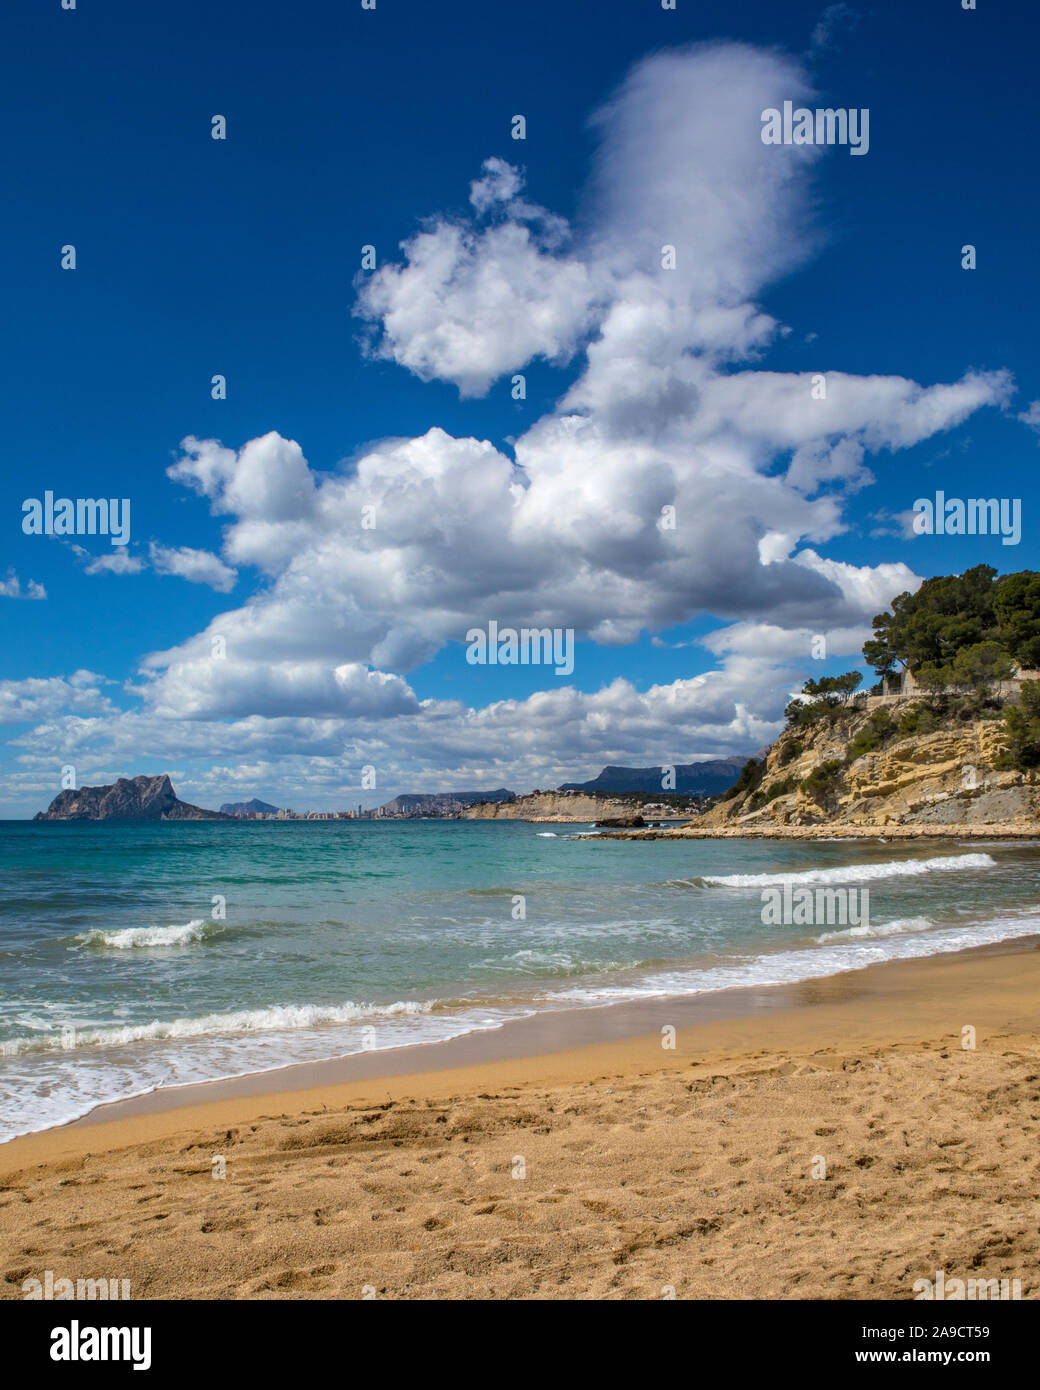 La vista desde la playa de El Portet, también conocida como Playa del Portet o Cala El Portet de Moraira, la región de la Costa Blanca de España. Foto de stock